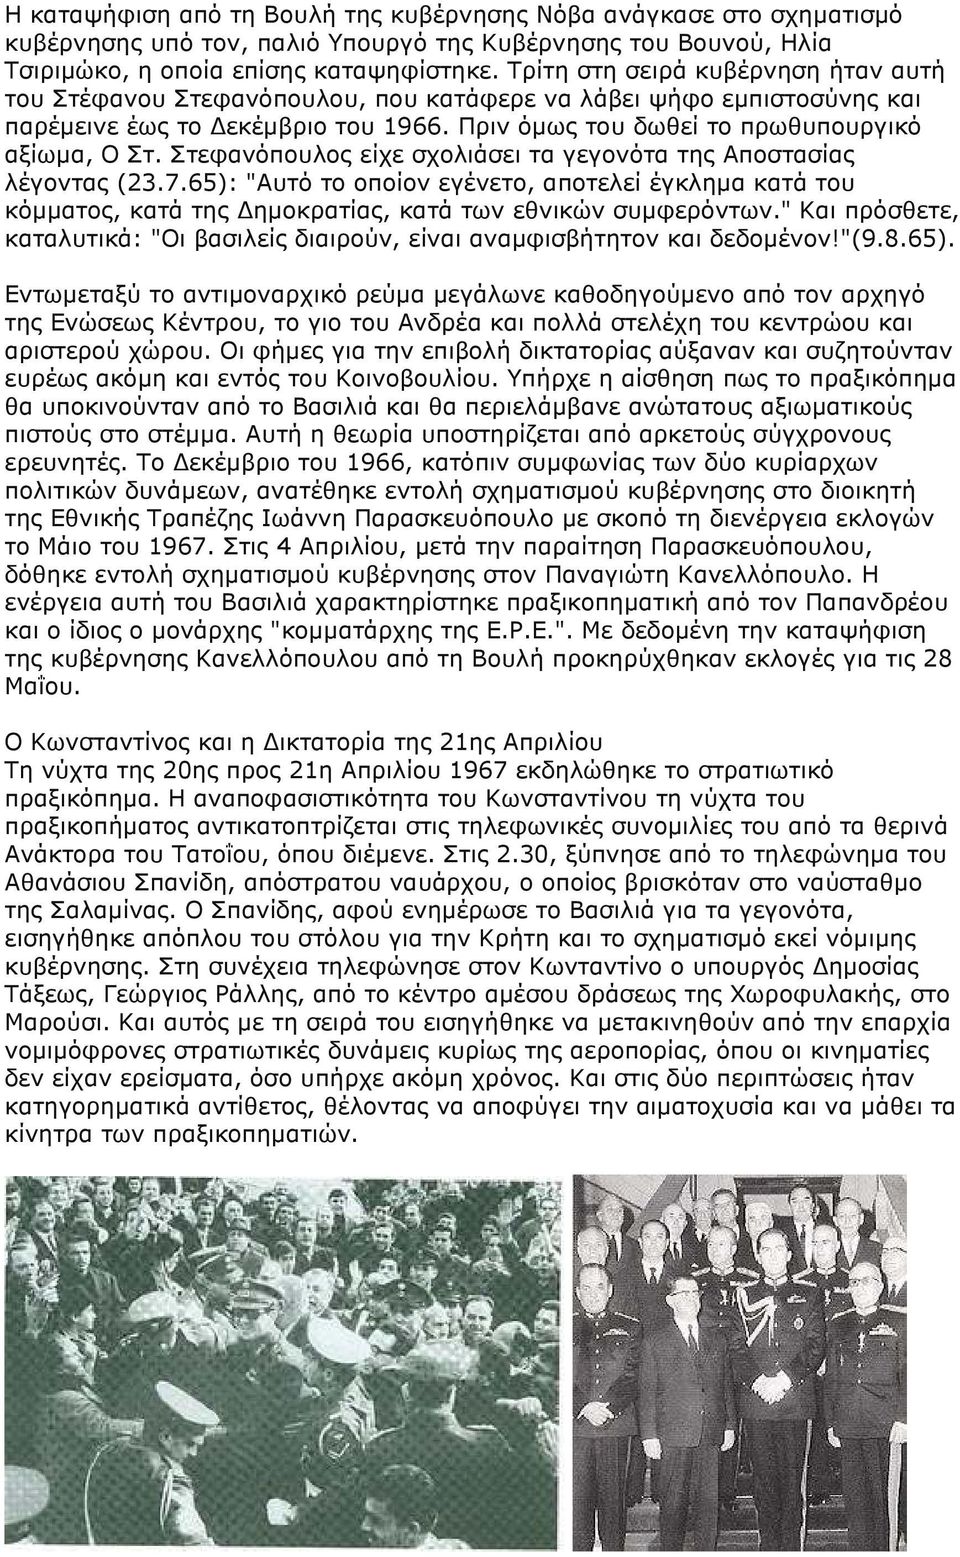 Στεφανόπουλος είχε σχολιάσει τα γεγονότα της Αποστασίας λέγοντας (23.7.65): "Αυτό το οποίον εγένετο, αποτελεί έγκληµα κατά του κόµµατος, κατά της ηµοκρατίας, κατά των εθνικών συµφερόντων.